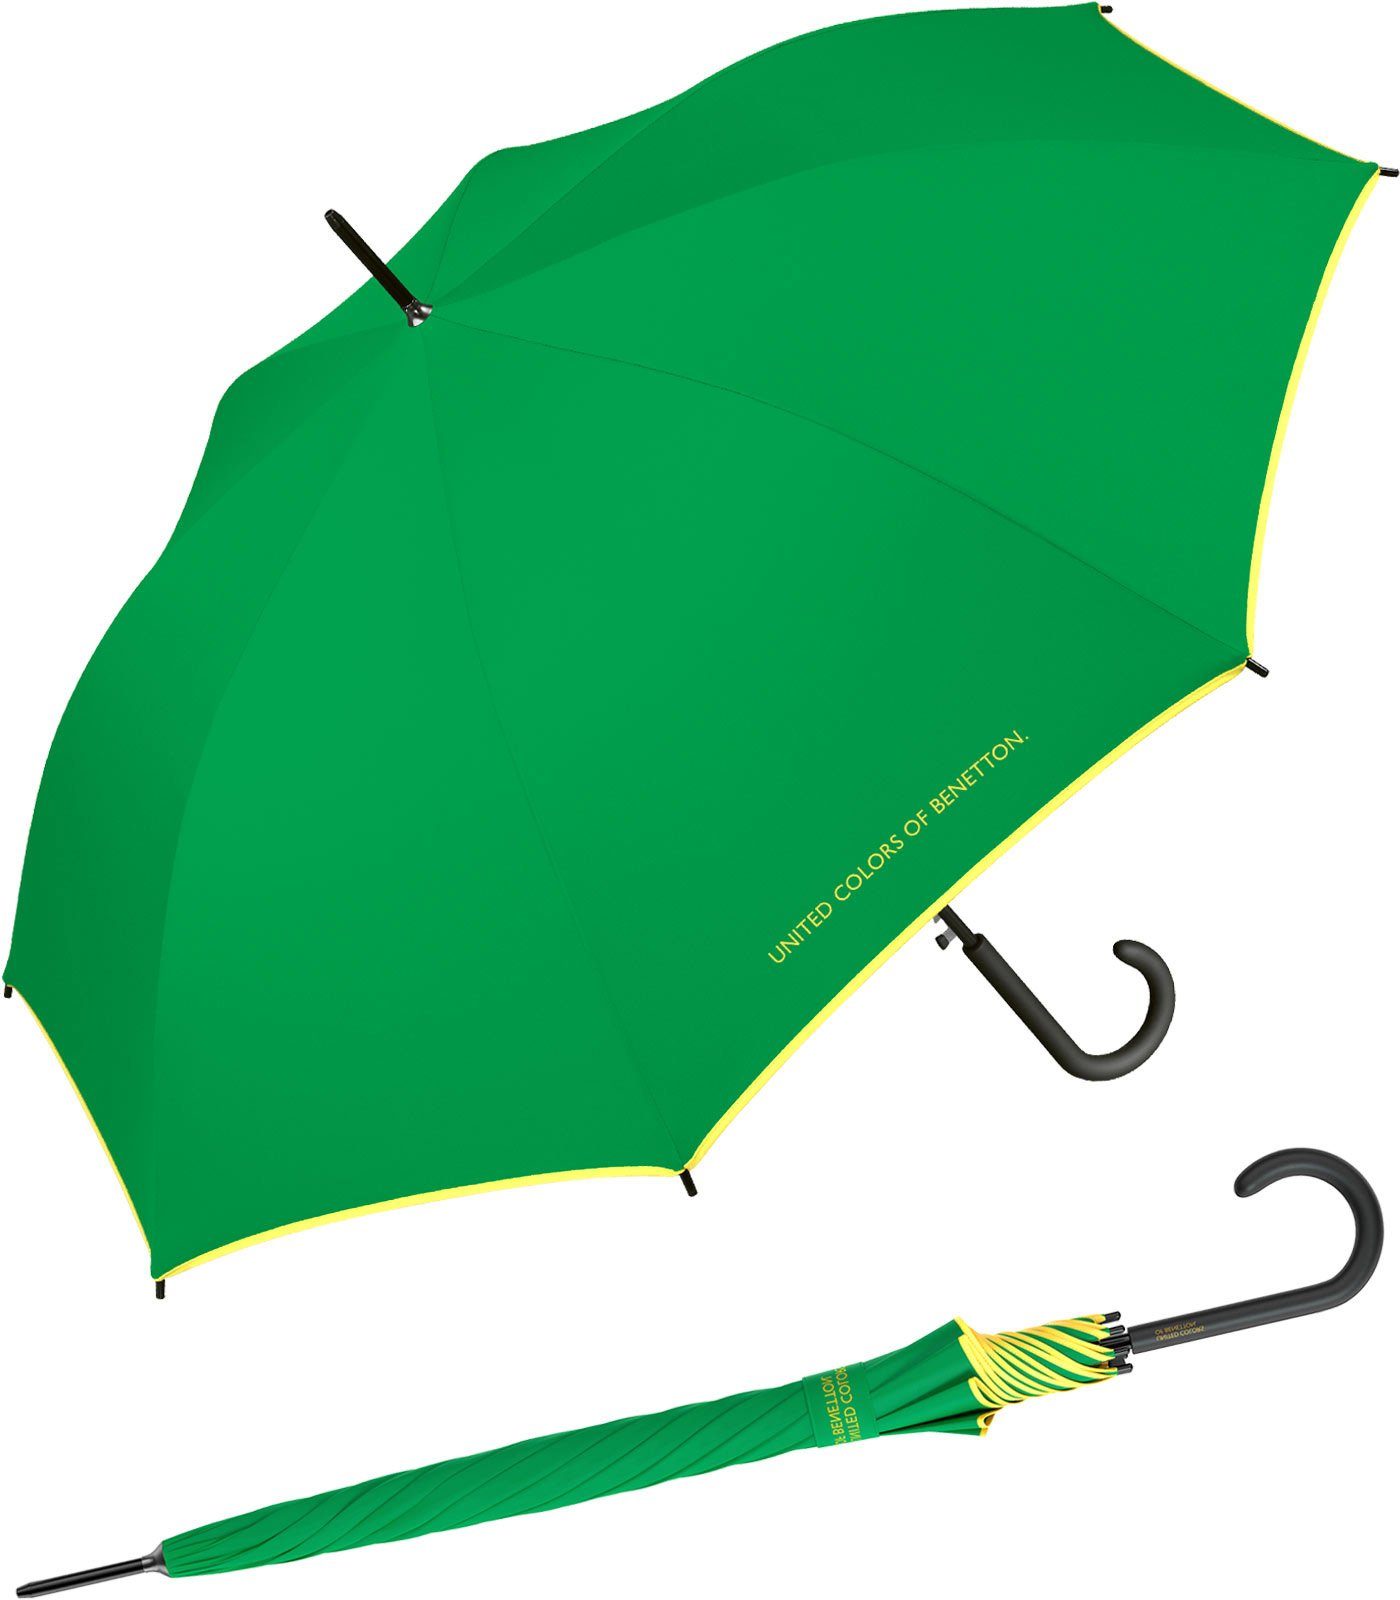 United Colors of Benetton Langregenschirm großer Regenschirm mit Auf-Automatik und Logo, einfarbig mit Kontrastfarben am Schirmrand grün